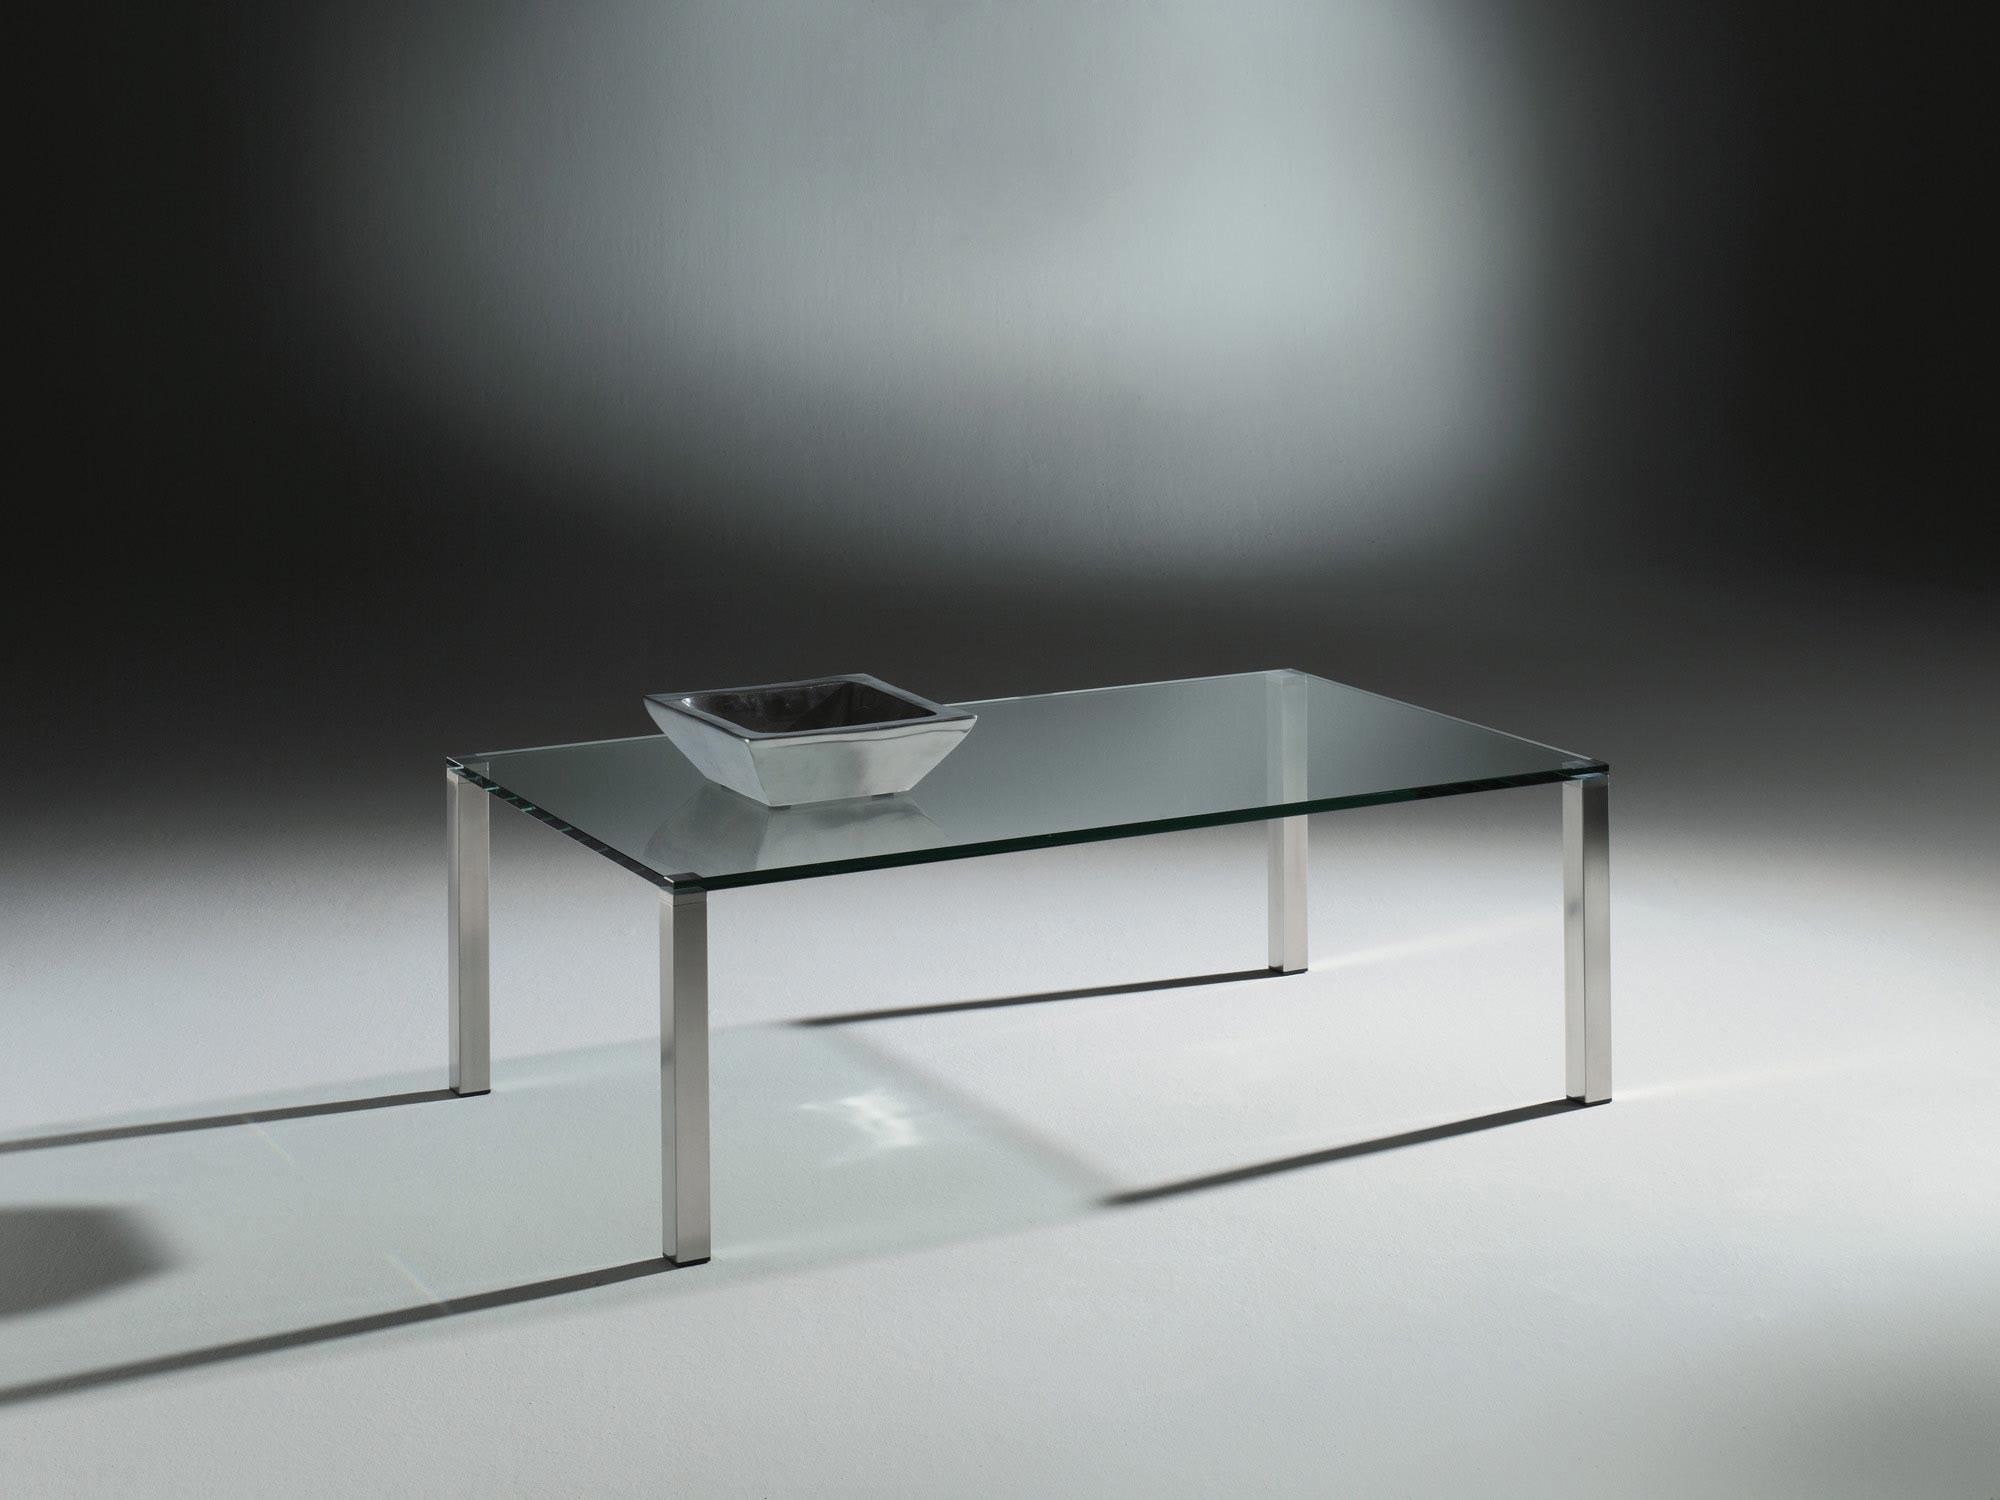 Glascouchtisch mit Edelstahlfüßen QUADRO von DREIECK DESIGN: Q 2740 - FLOATGLAS klar - Tischfüße Edelstahl gebürstet